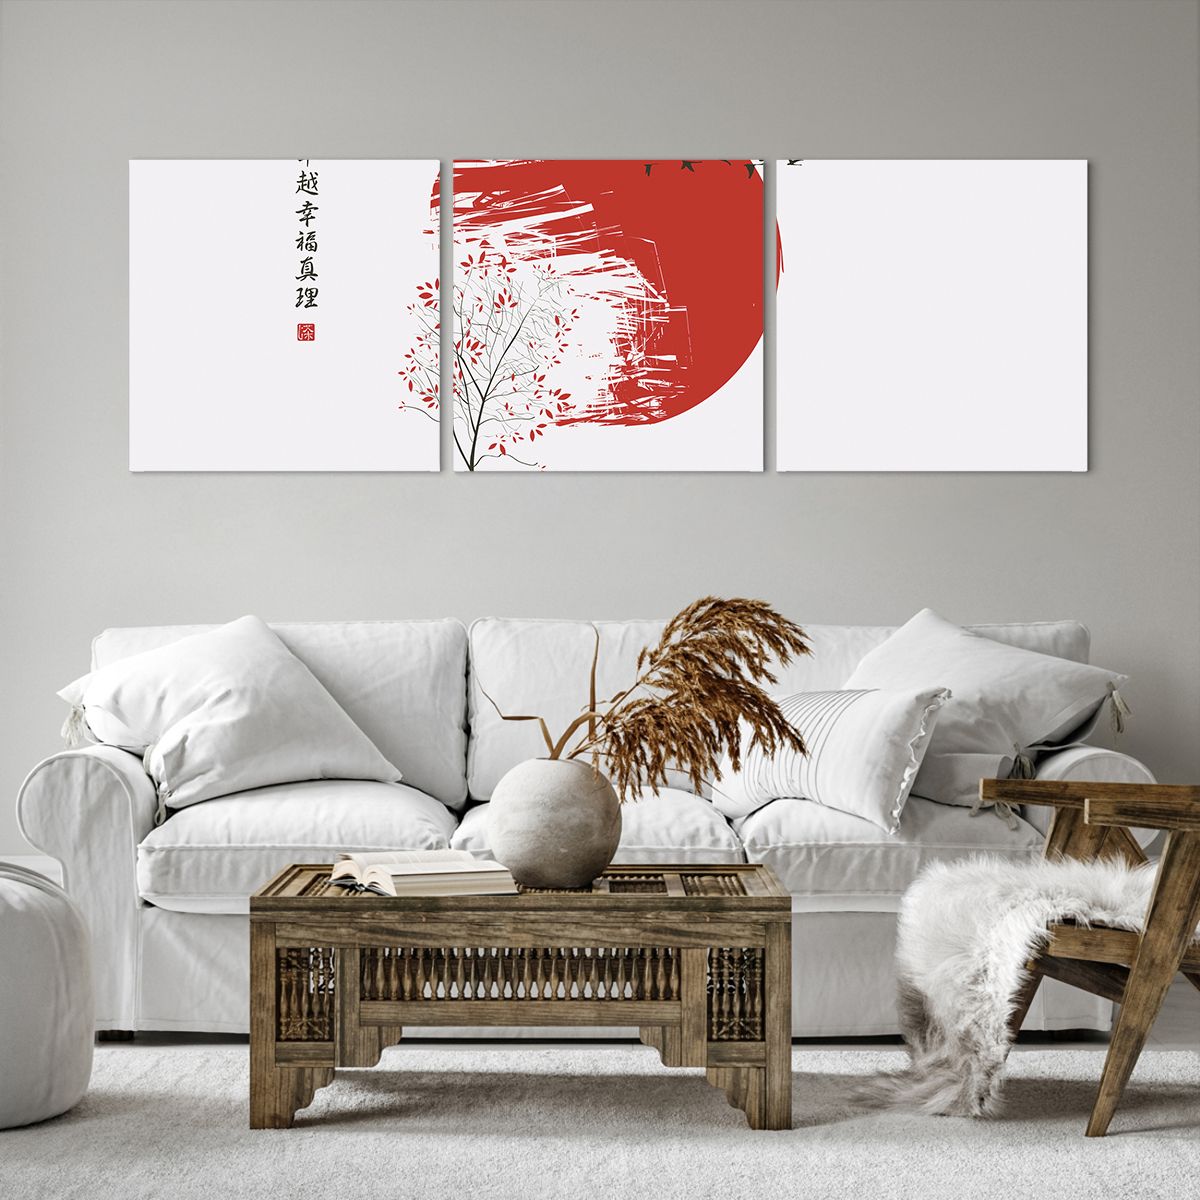 Bild auf Leinwand Abstraktion, Bild auf Leinwand Japan, Bild auf Leinwand Kirschblüte, Bild auf Leinwand Grafik, Bild auf Leinwand Der Sonnenuntergang